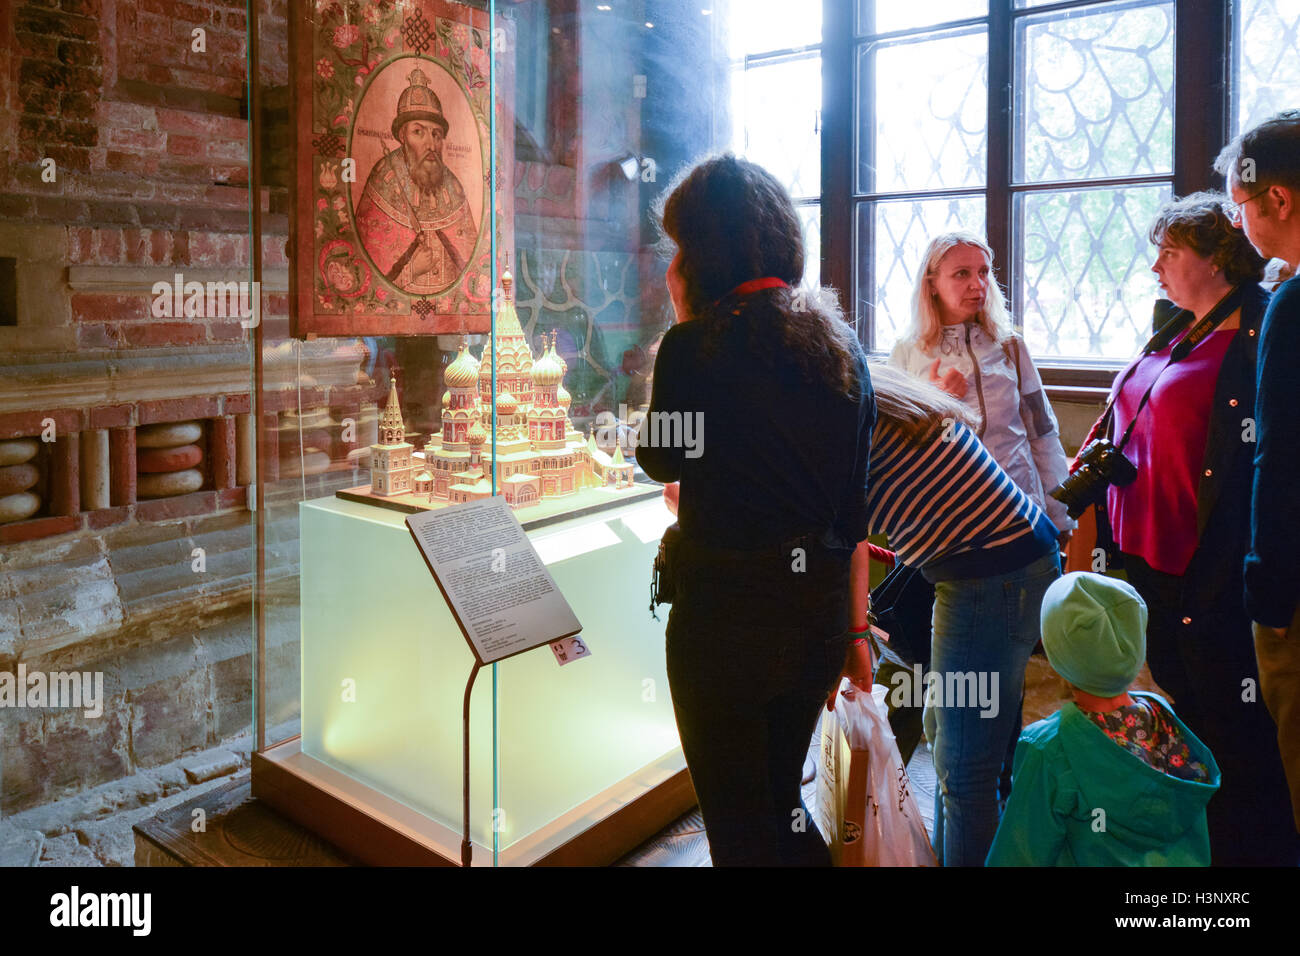 St Basils Kathedrale Moskau Innenraum - Touristen auf der Suche zu einem Modell erklärt die Architektur - Familie mit Guide, Mädchen mit aud Stockfoto